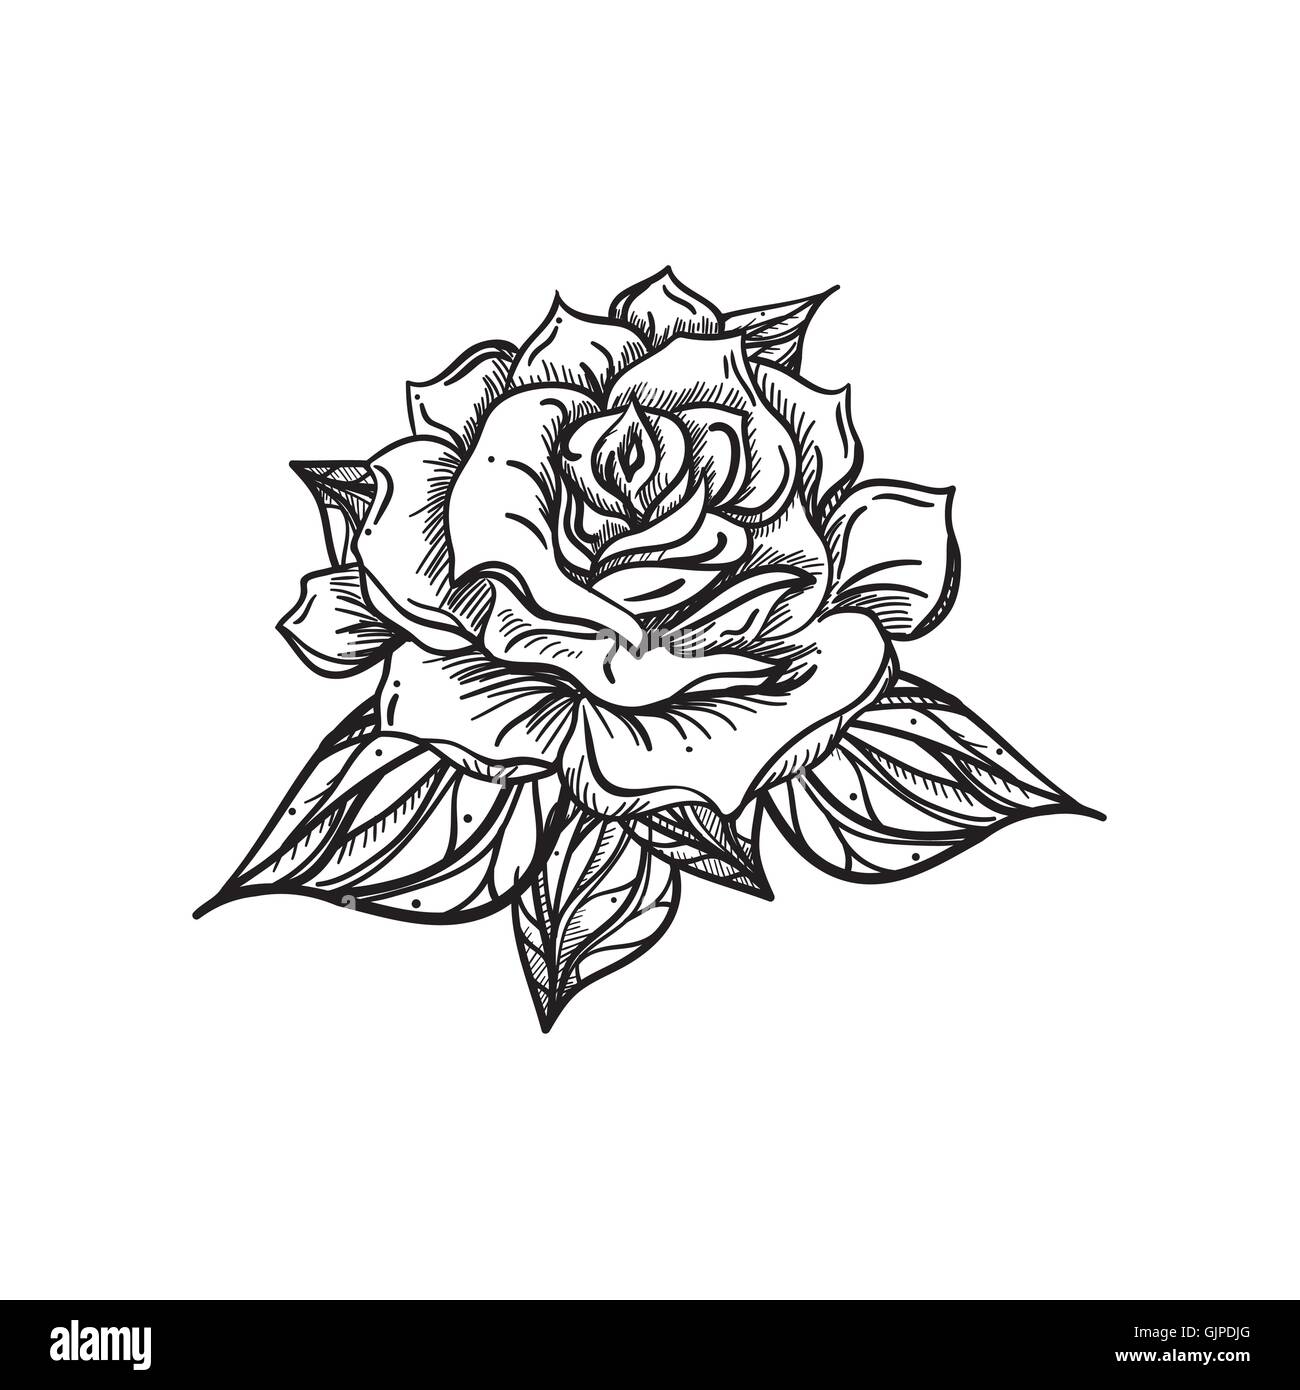 Handgezeichnete Hochzeit Rose. Blume Vorlage für Feier, Hochzeit, Urlaub.  Rose für Print und digitale Kunst, Tattoo. Vektor Stock-Vektorgrafik - Alamy